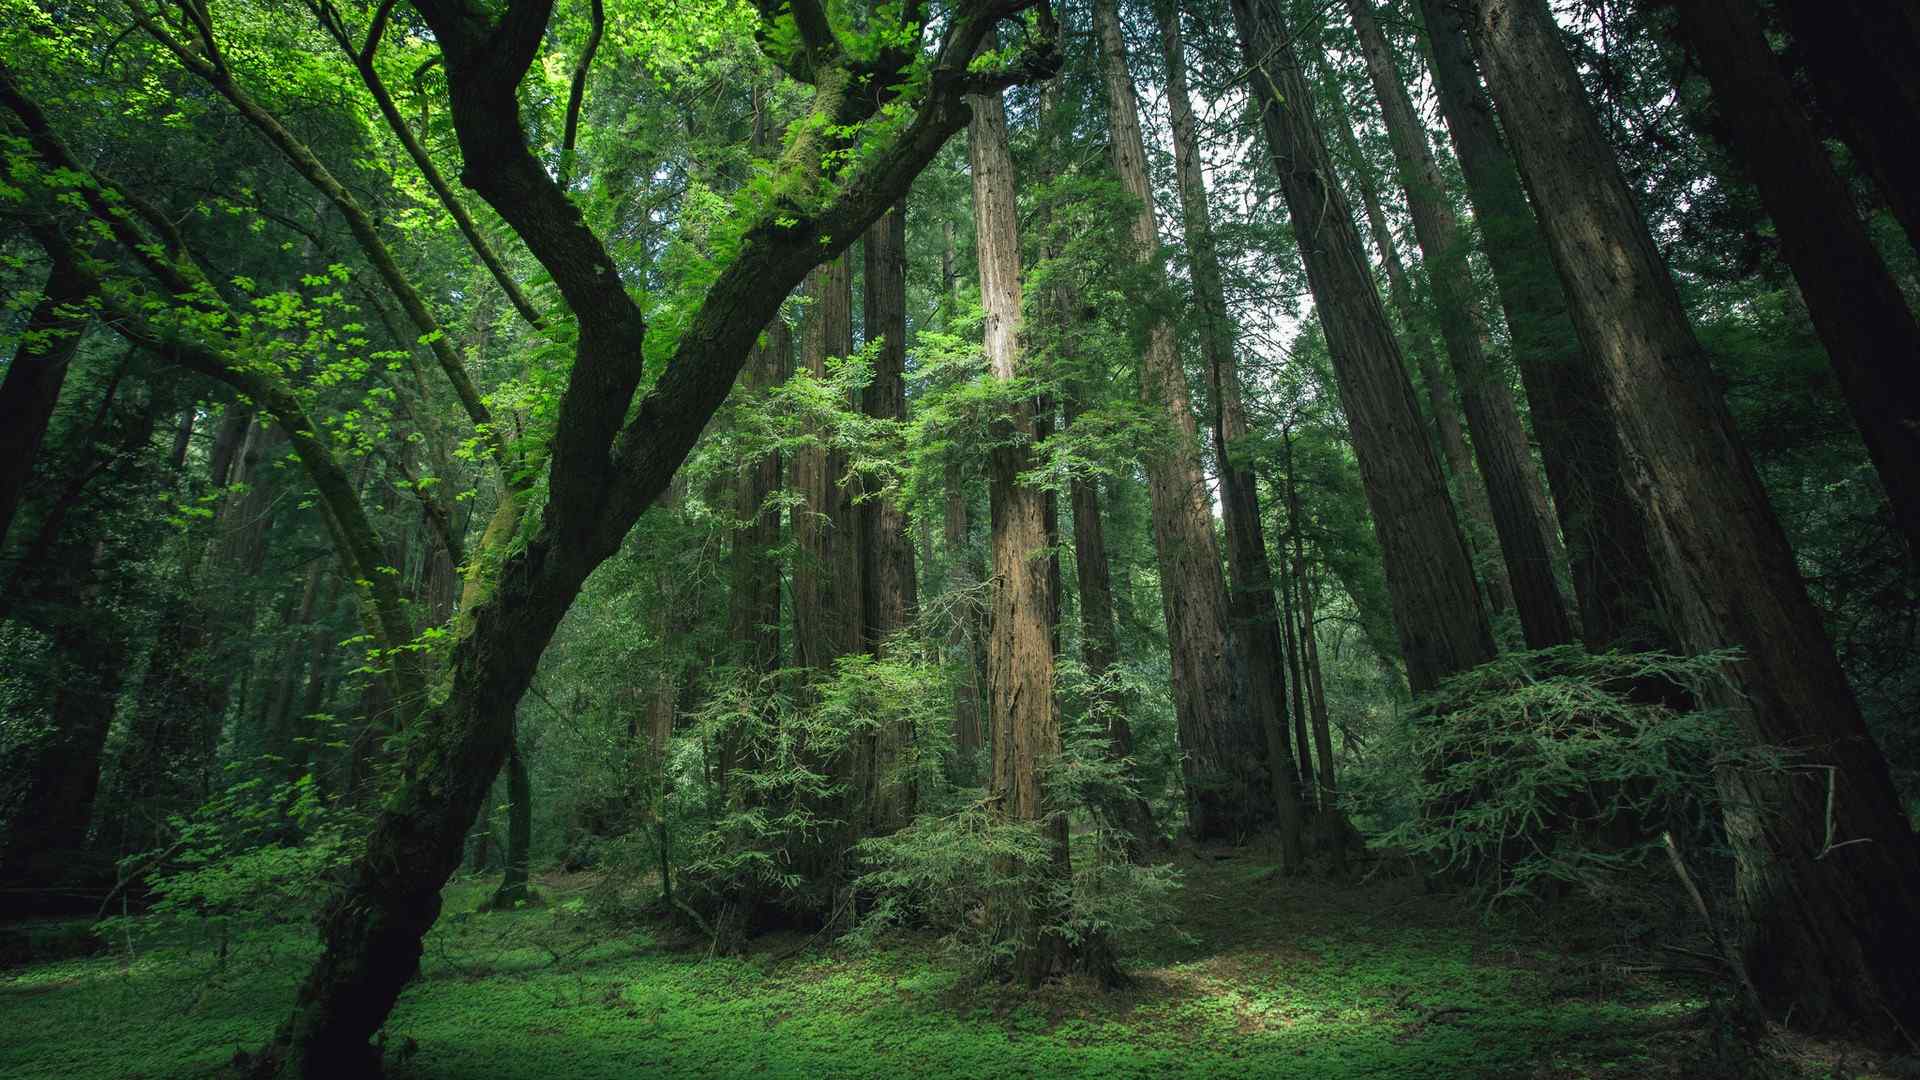 阳光照进森林深处唯美风格自然风景图片壁纸【9】 - 摄影 - 亿图全景图库